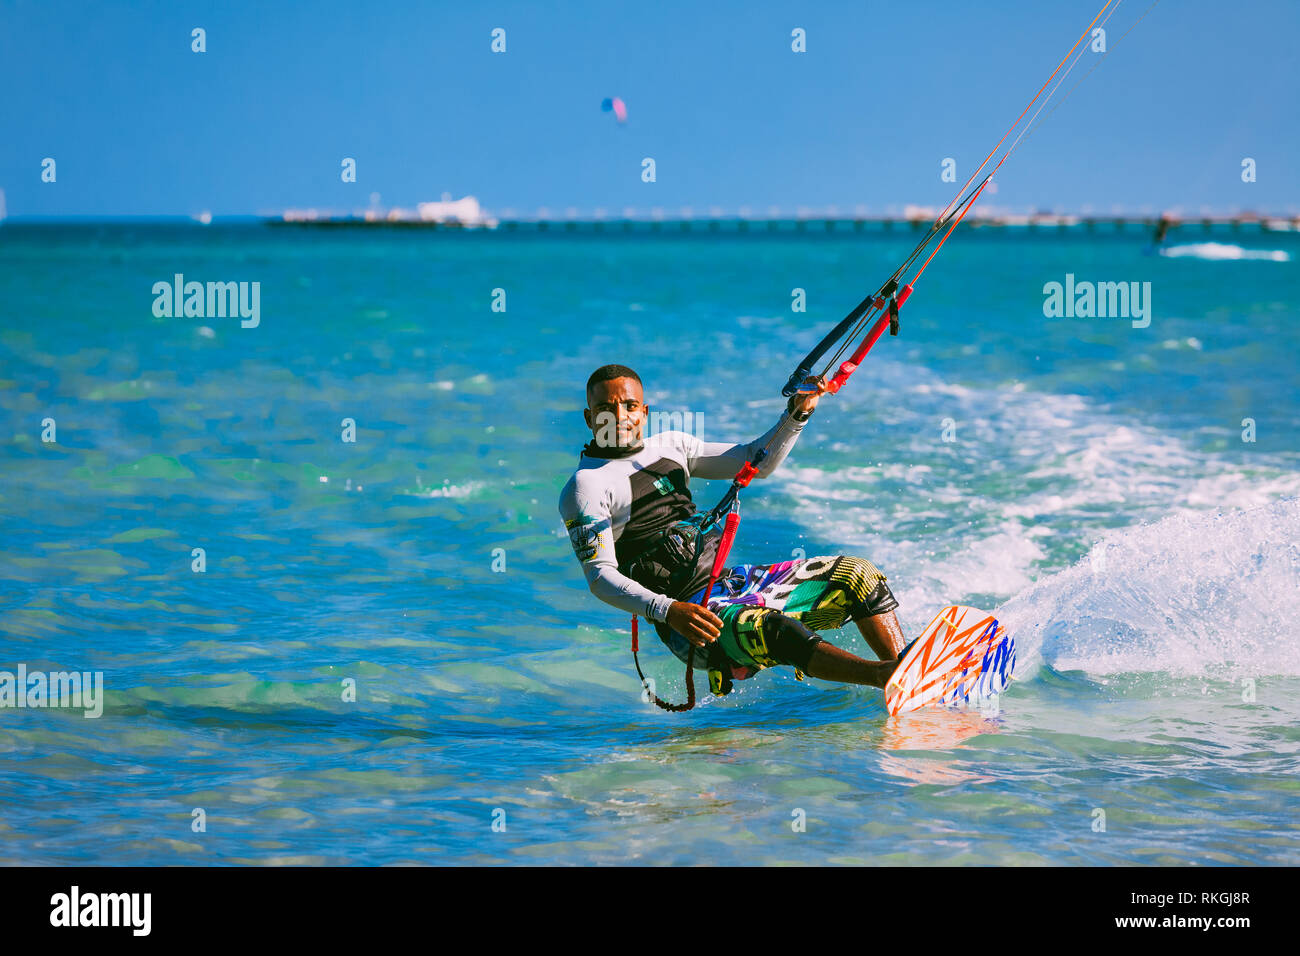 L'Egypte, Hurghada - 30 novembre, 2017 : le kiter sur la planche tenue le cerf-volant sangles. Le wave riding sur l'eau cristalline de la surface de la mer Rouge. Le p Banque D'Images